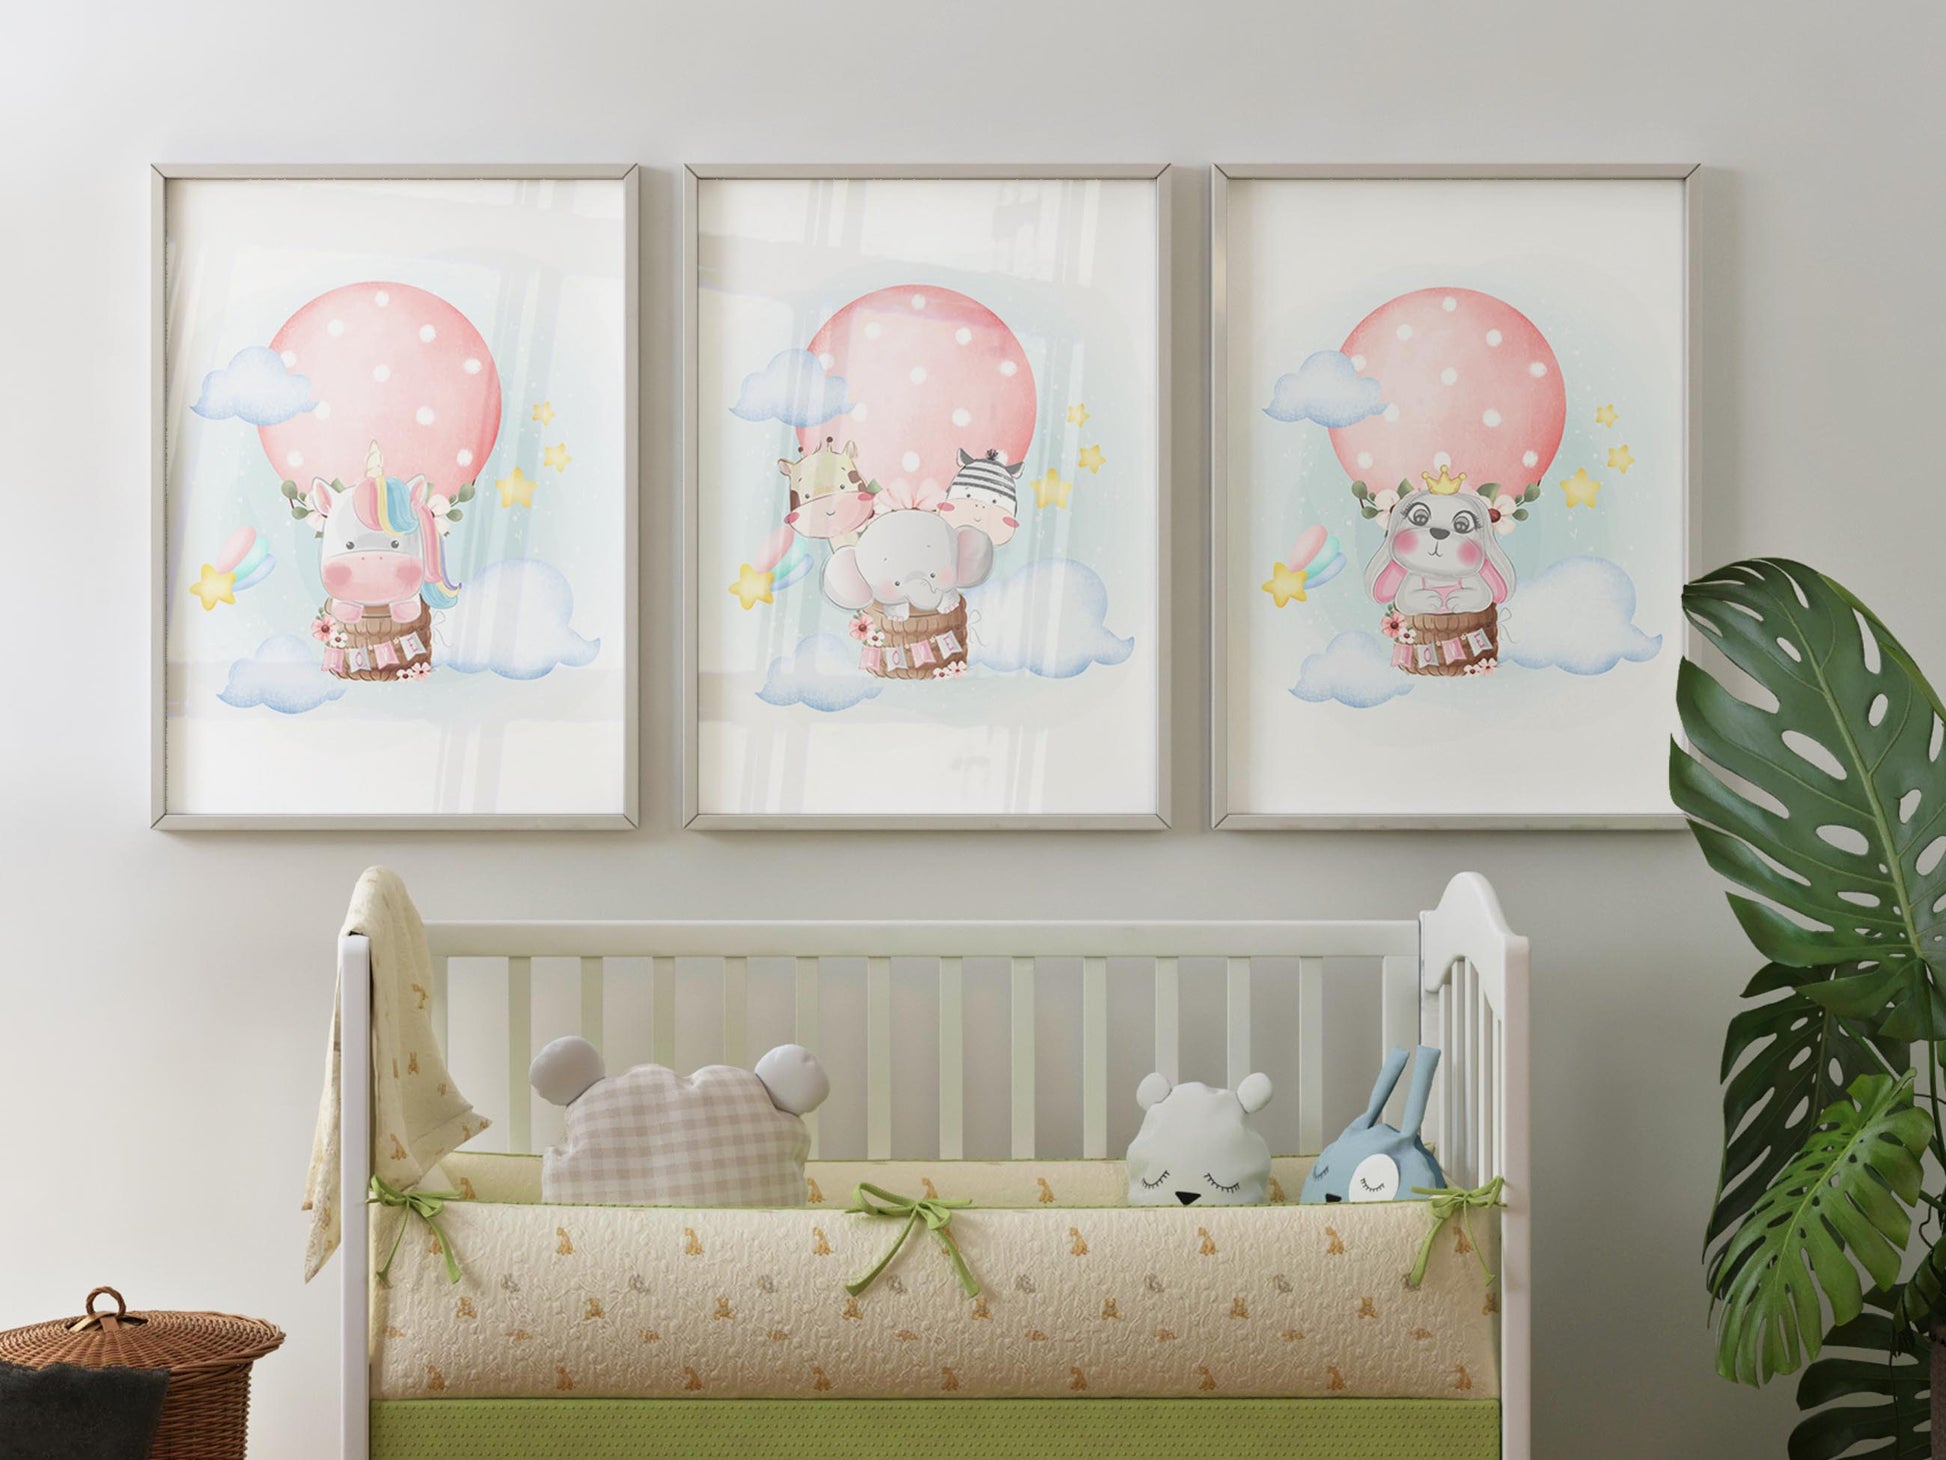 Customized baby shower gift: Framed nursery wall art for kids' room decor.